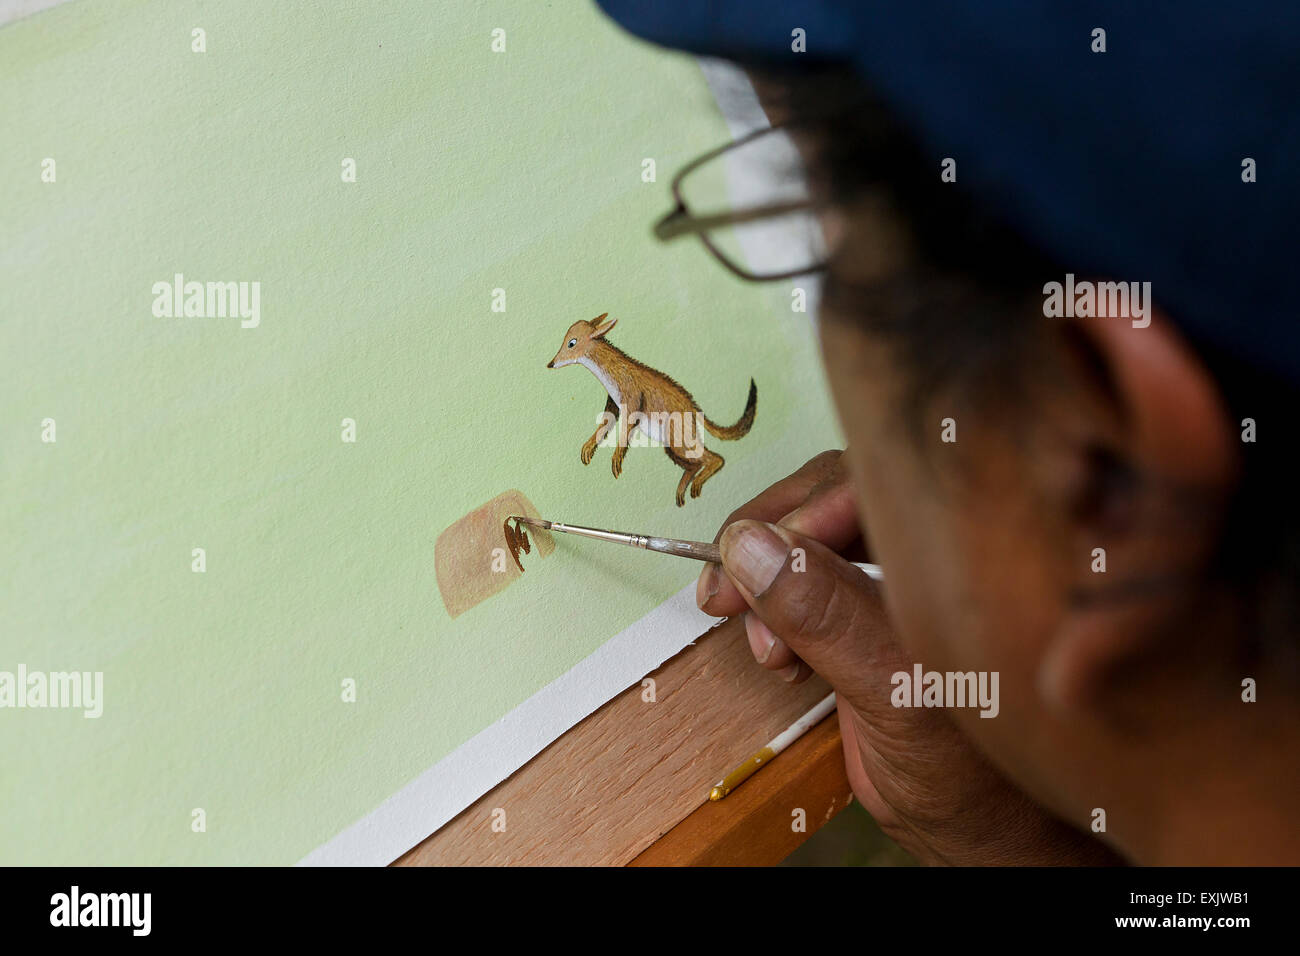 Man painting personnage animal sur papier Banque D'Images